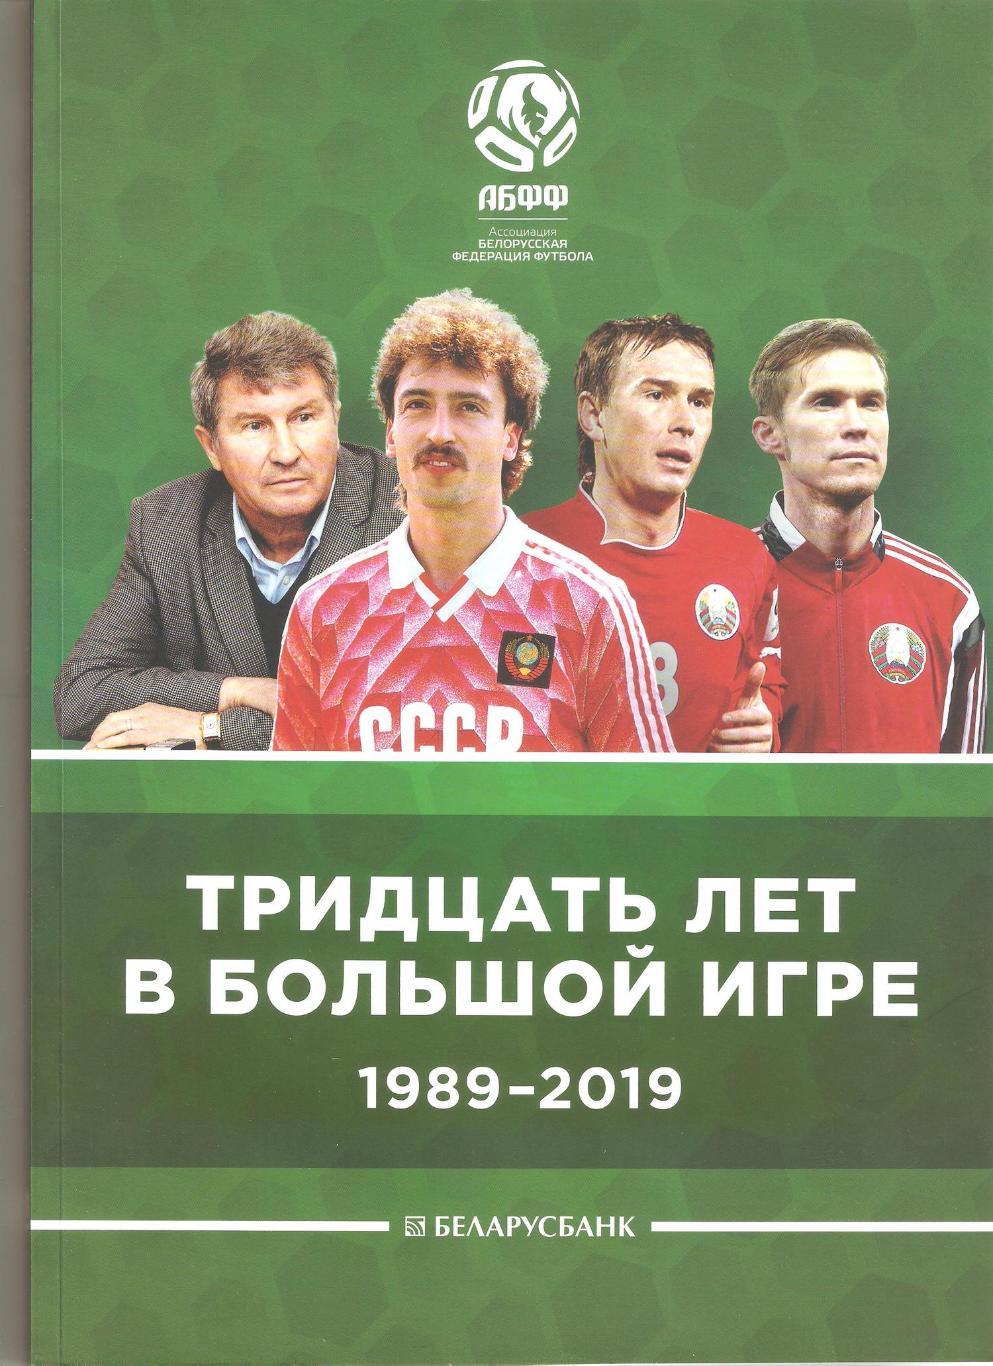 АБФФ: тридцать лет в большой игре (1989-2019)